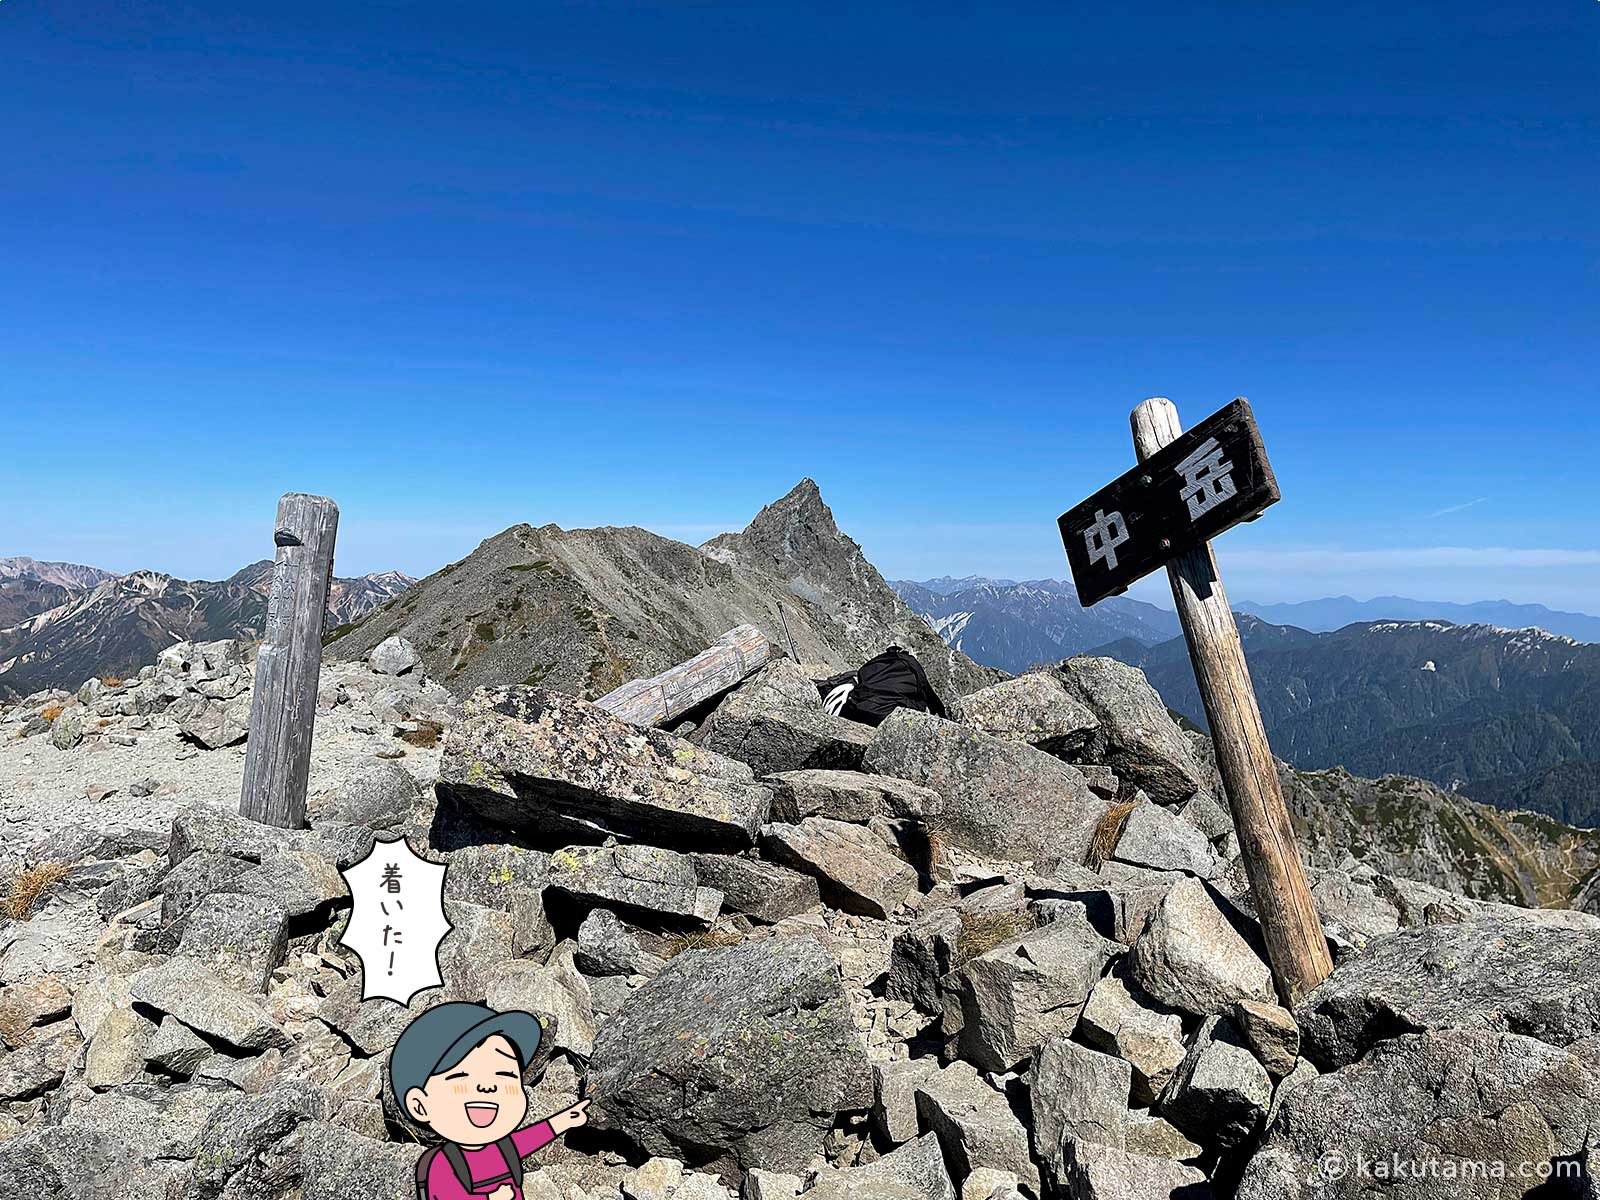 中岳山頂の標識の写真と登山者のイラスト